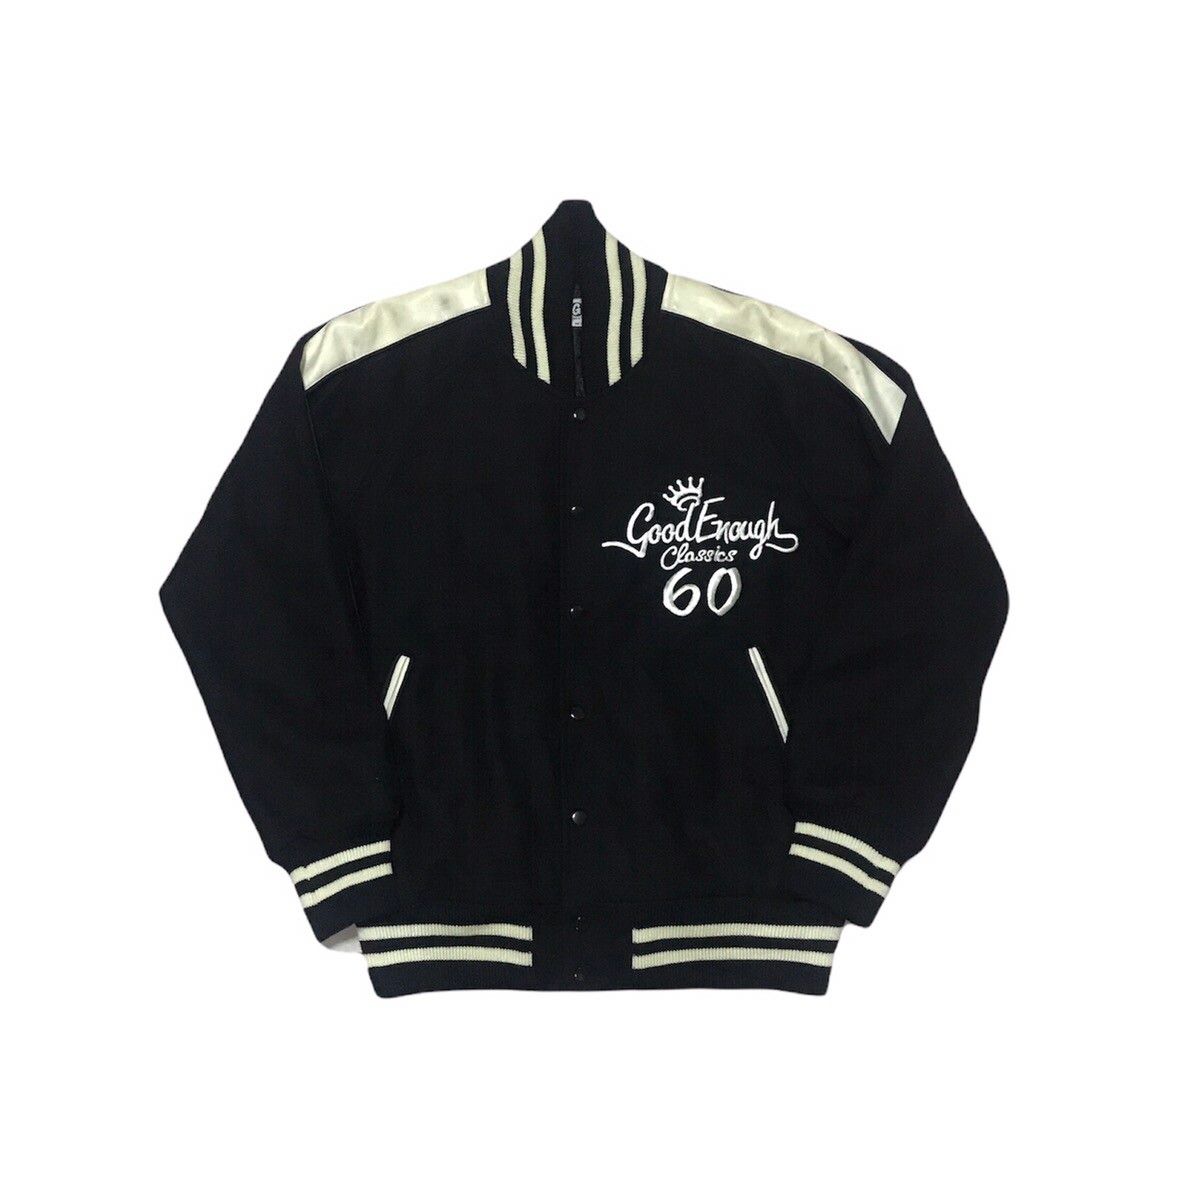 Goodenough Classic 60 Varsity Jacket - 1